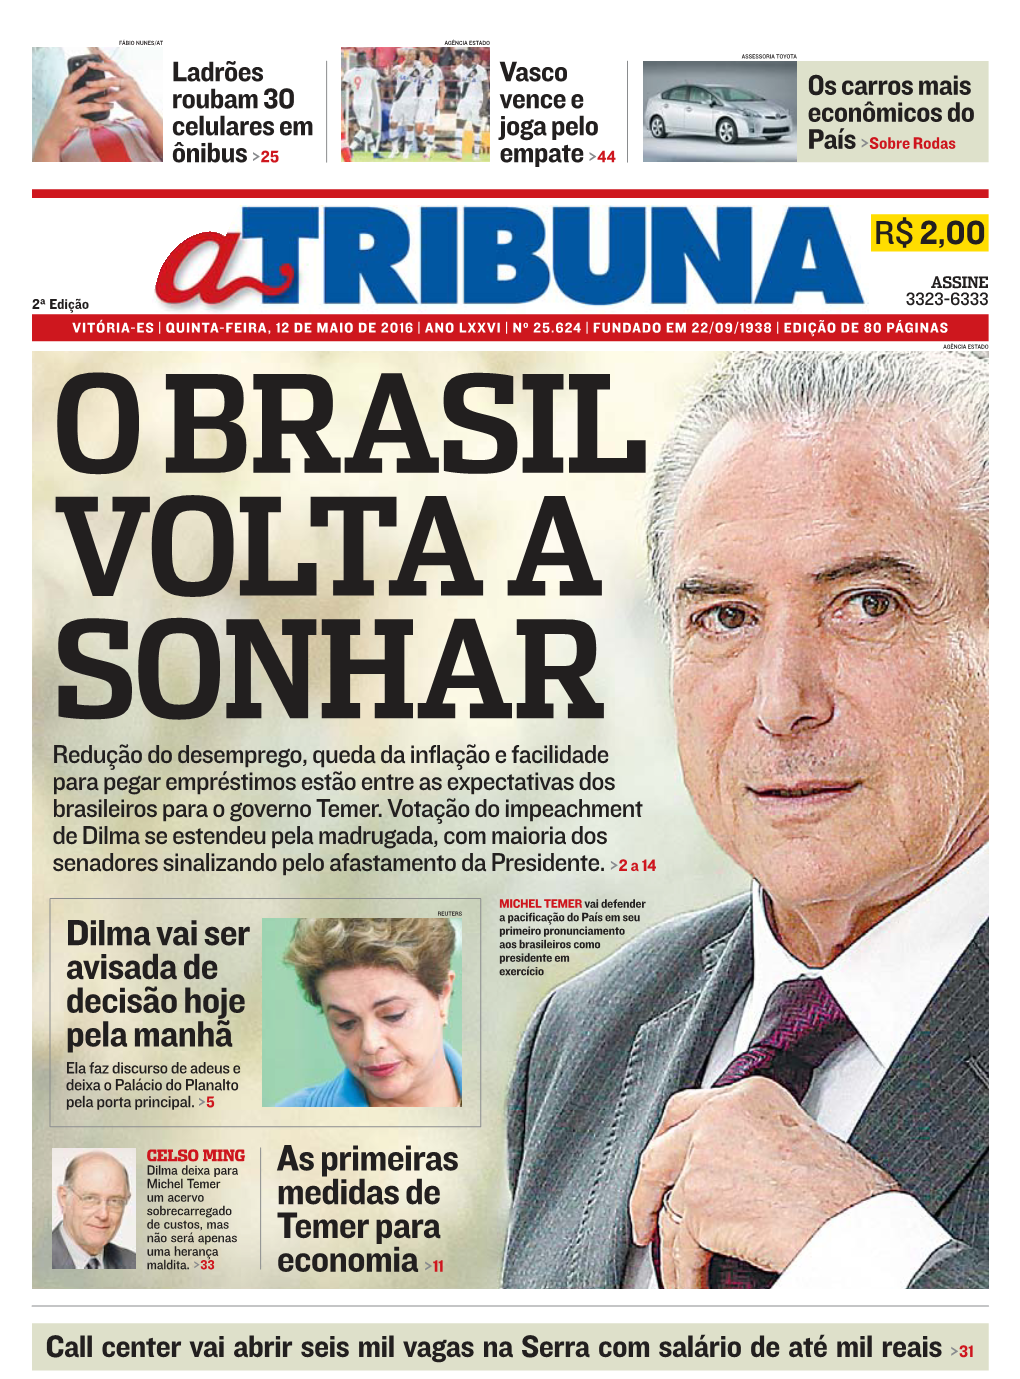 Dilma Vai Ser Avisada De Decisão Hoje Pela Manhã As Primeiras Medidas De Temer Para Economia &gt;11